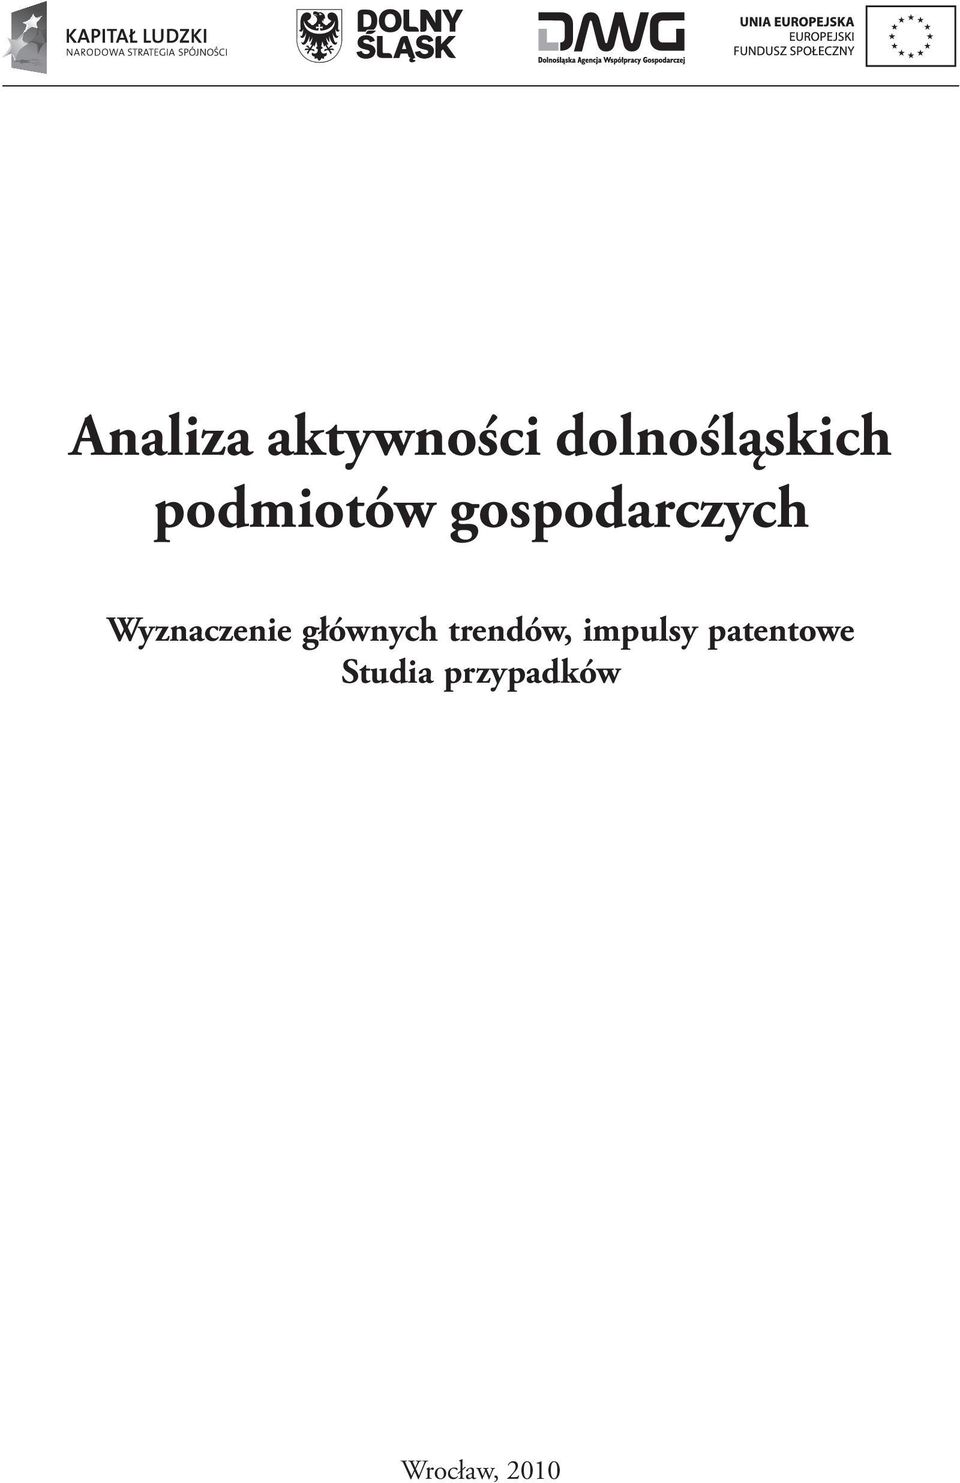 w ramach projektu Analizy, badania i prognozy na rzecz Strategii Województwa Dolnośląskiego [POKL.08.01.